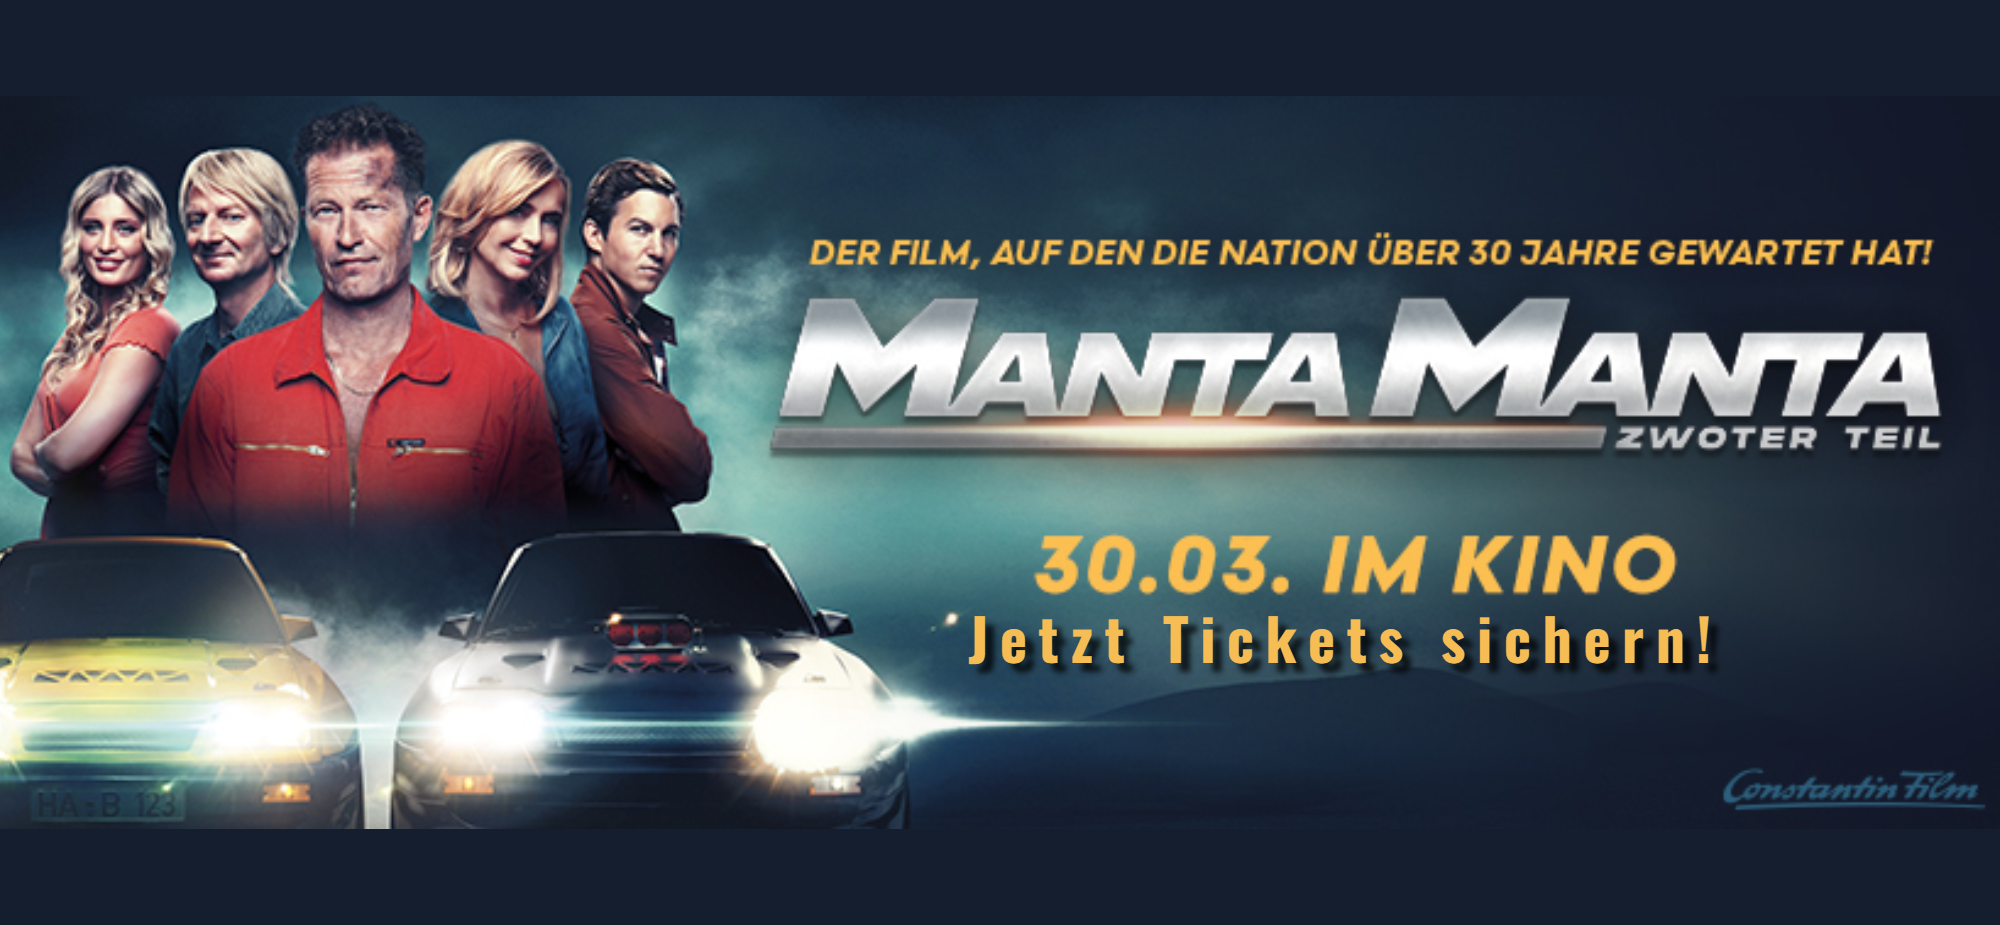 Manta Manta - Zwoter Teil - jetzt Tickets sichern! 